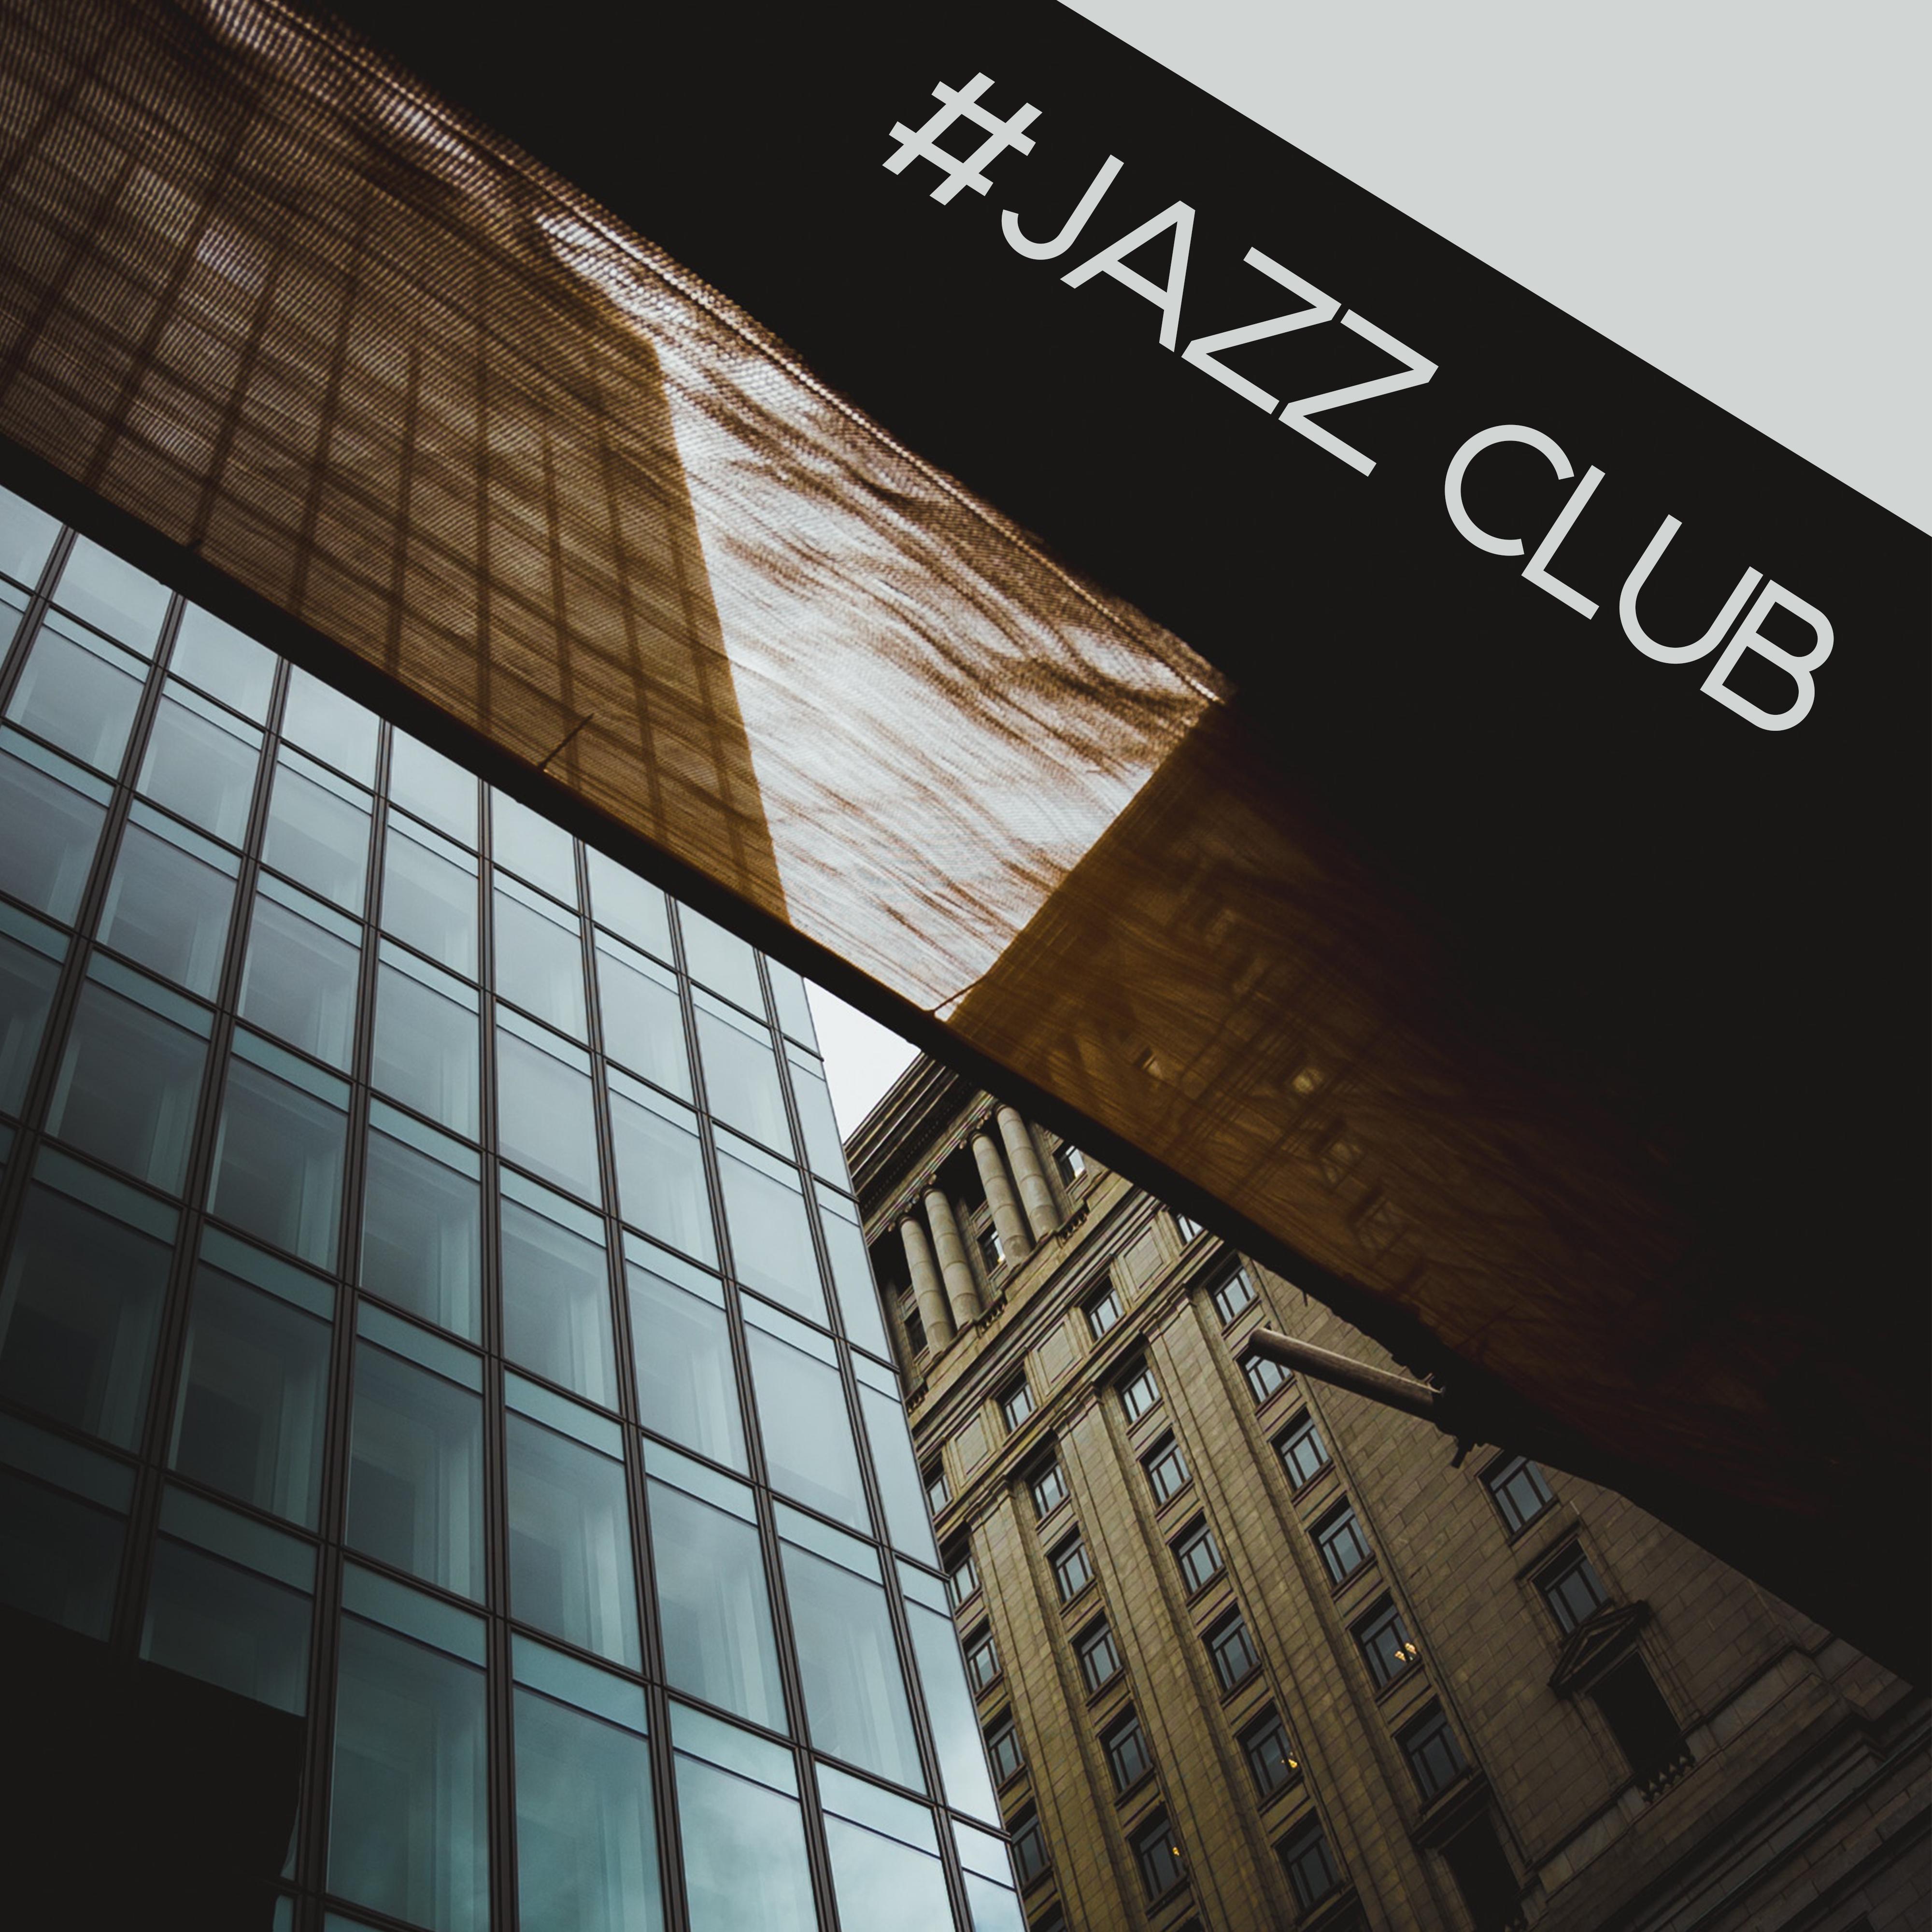 #Jazz Club